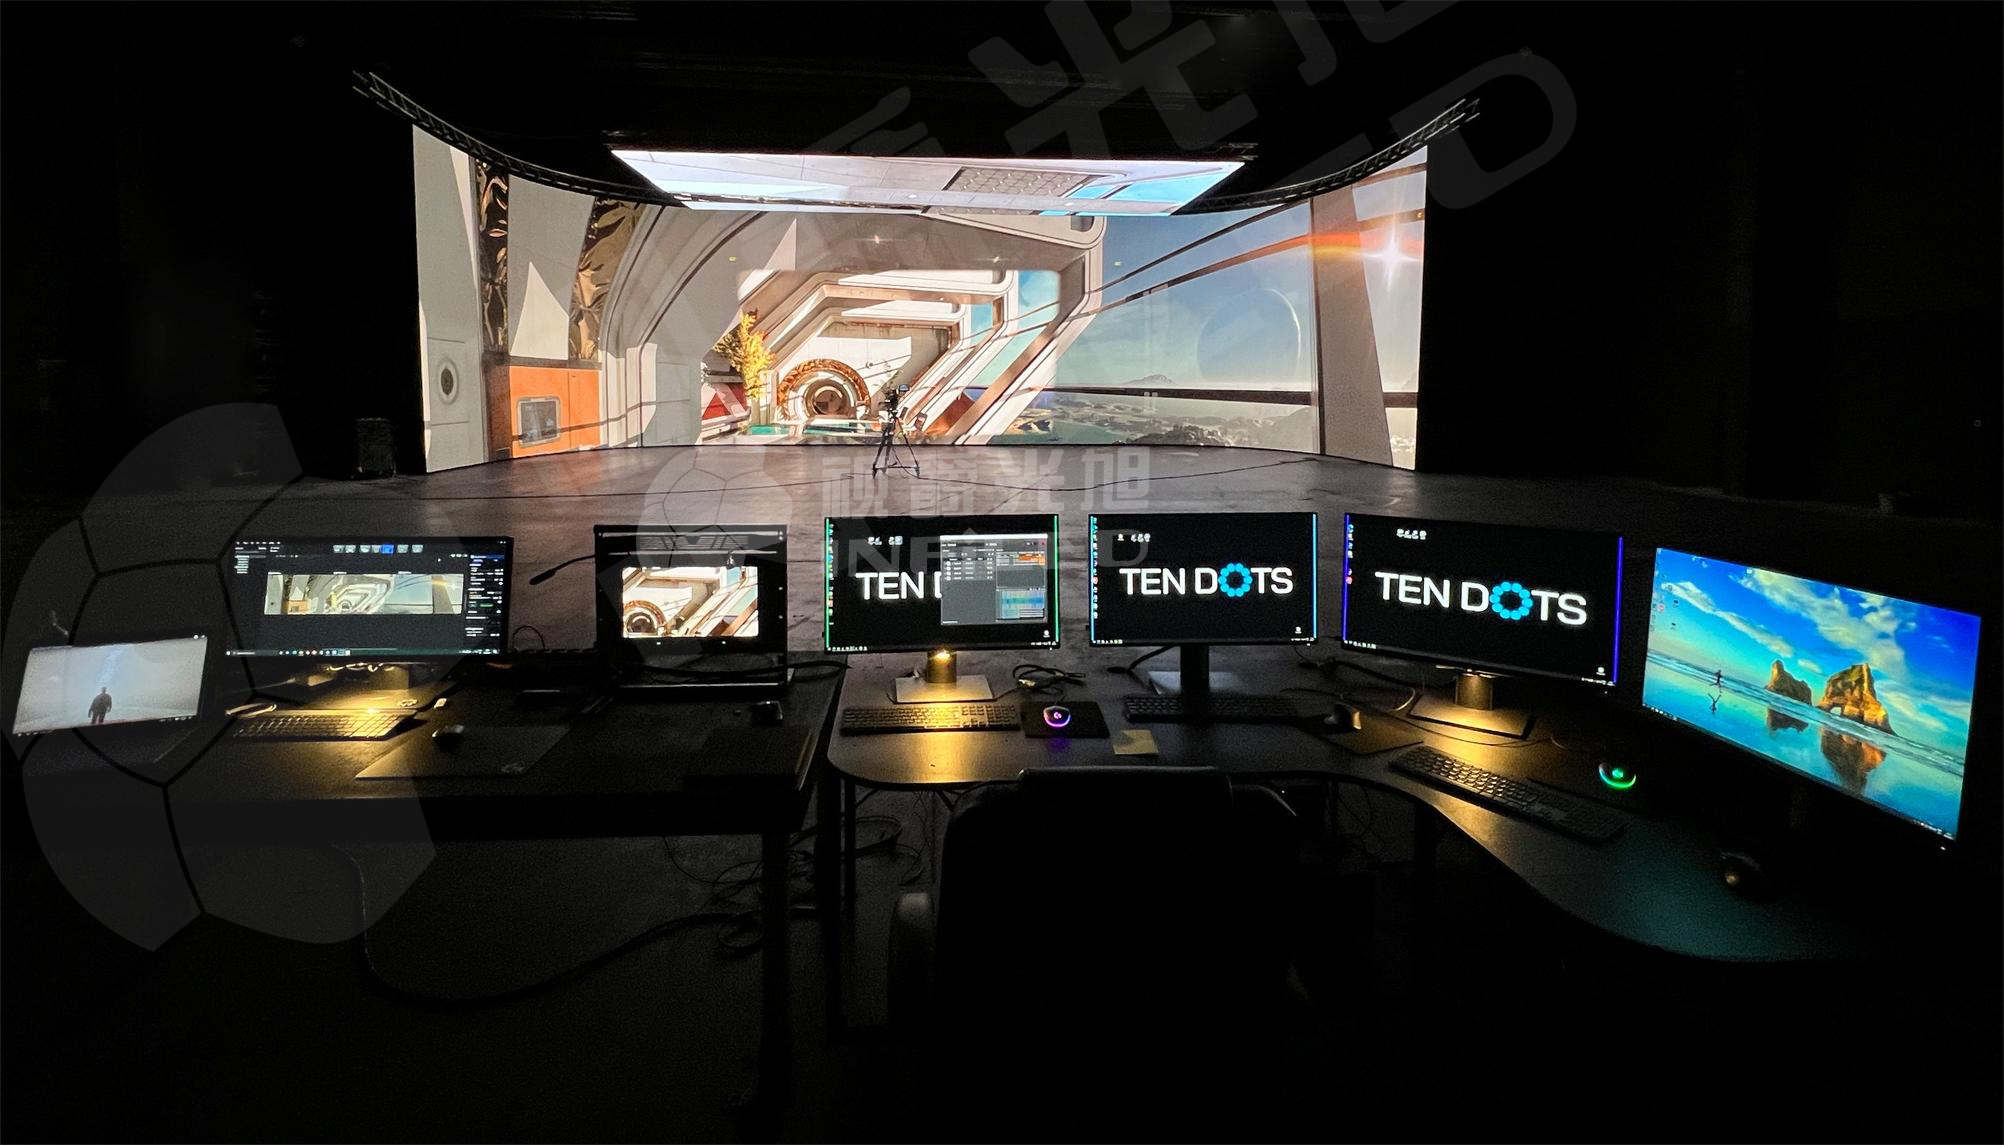 8868体育官方平台xR虚拟拍摄LED显示屏精彩案例TenDots虚拟制片工作室